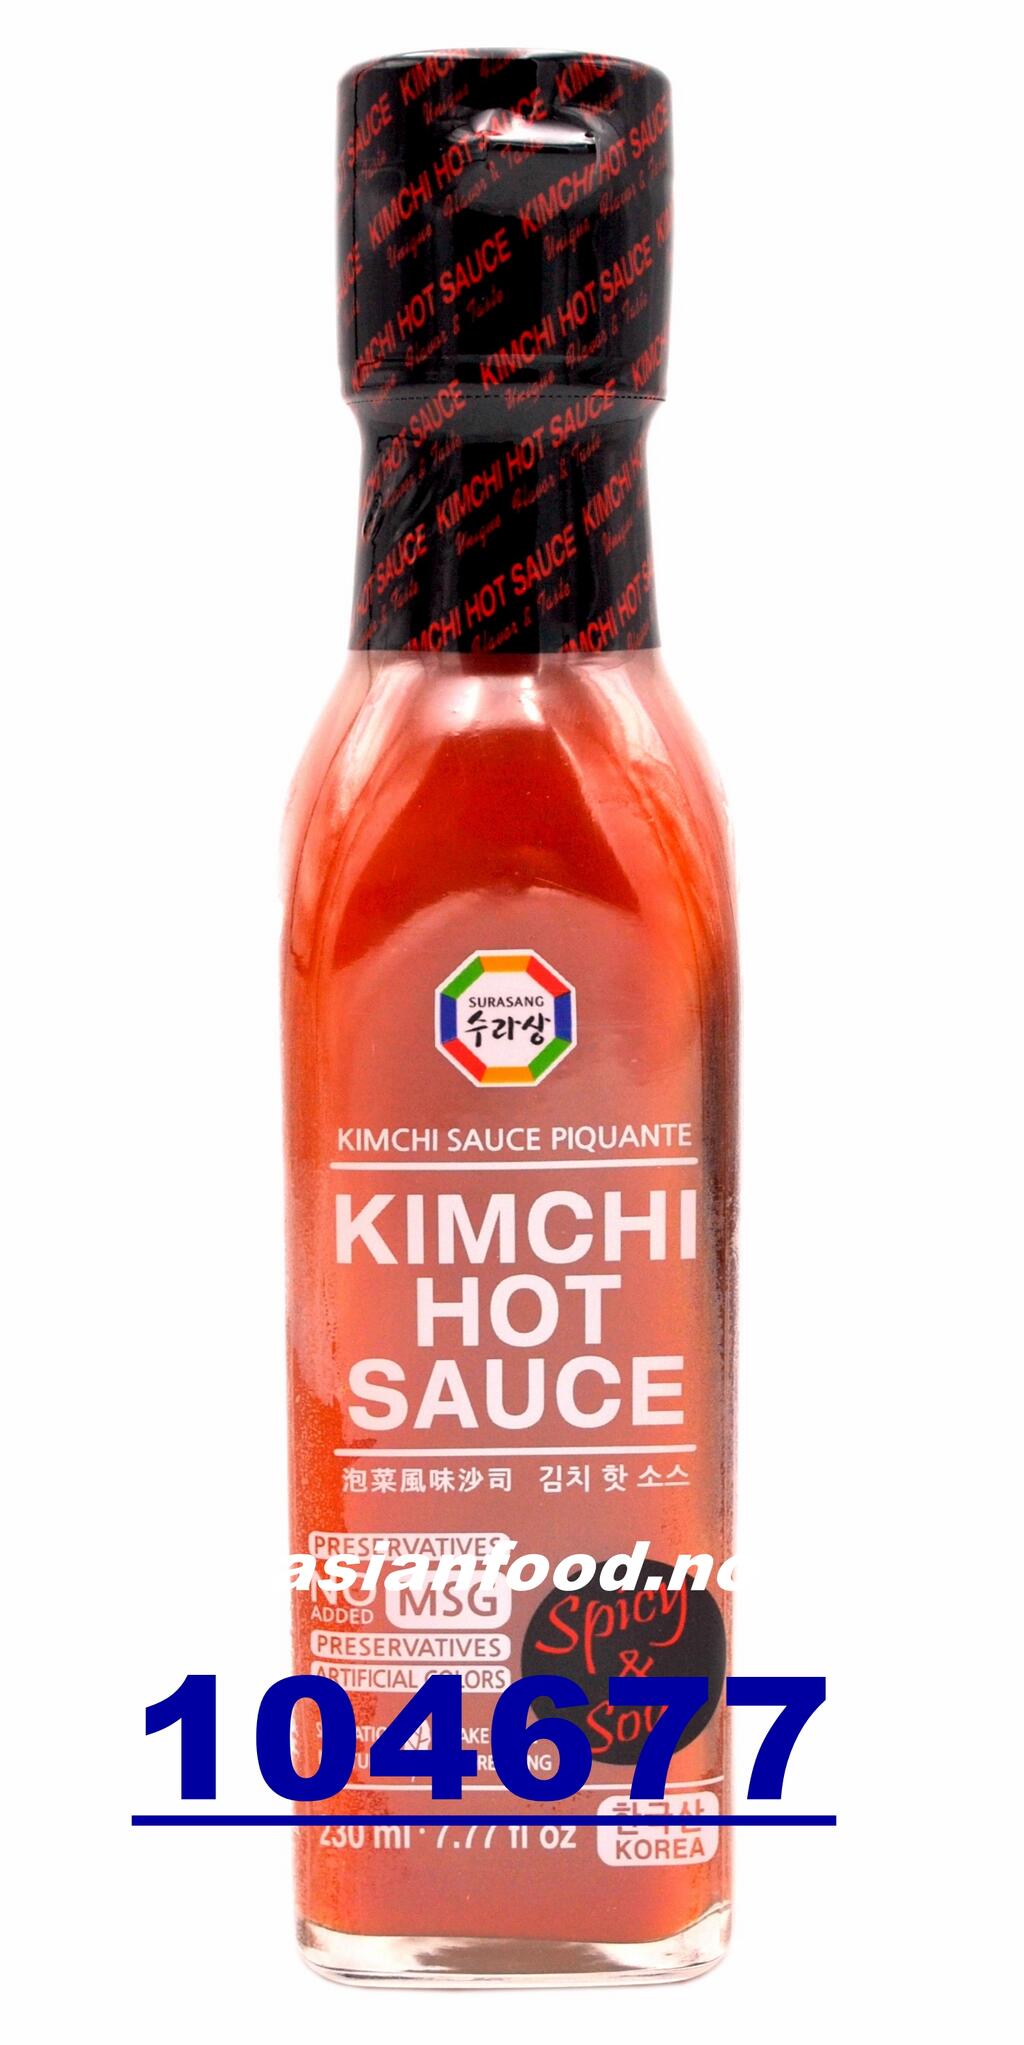 SURASANG Kimchi hot sauce 15x230ml Tuong lam kimchi KR - Asian Food ...